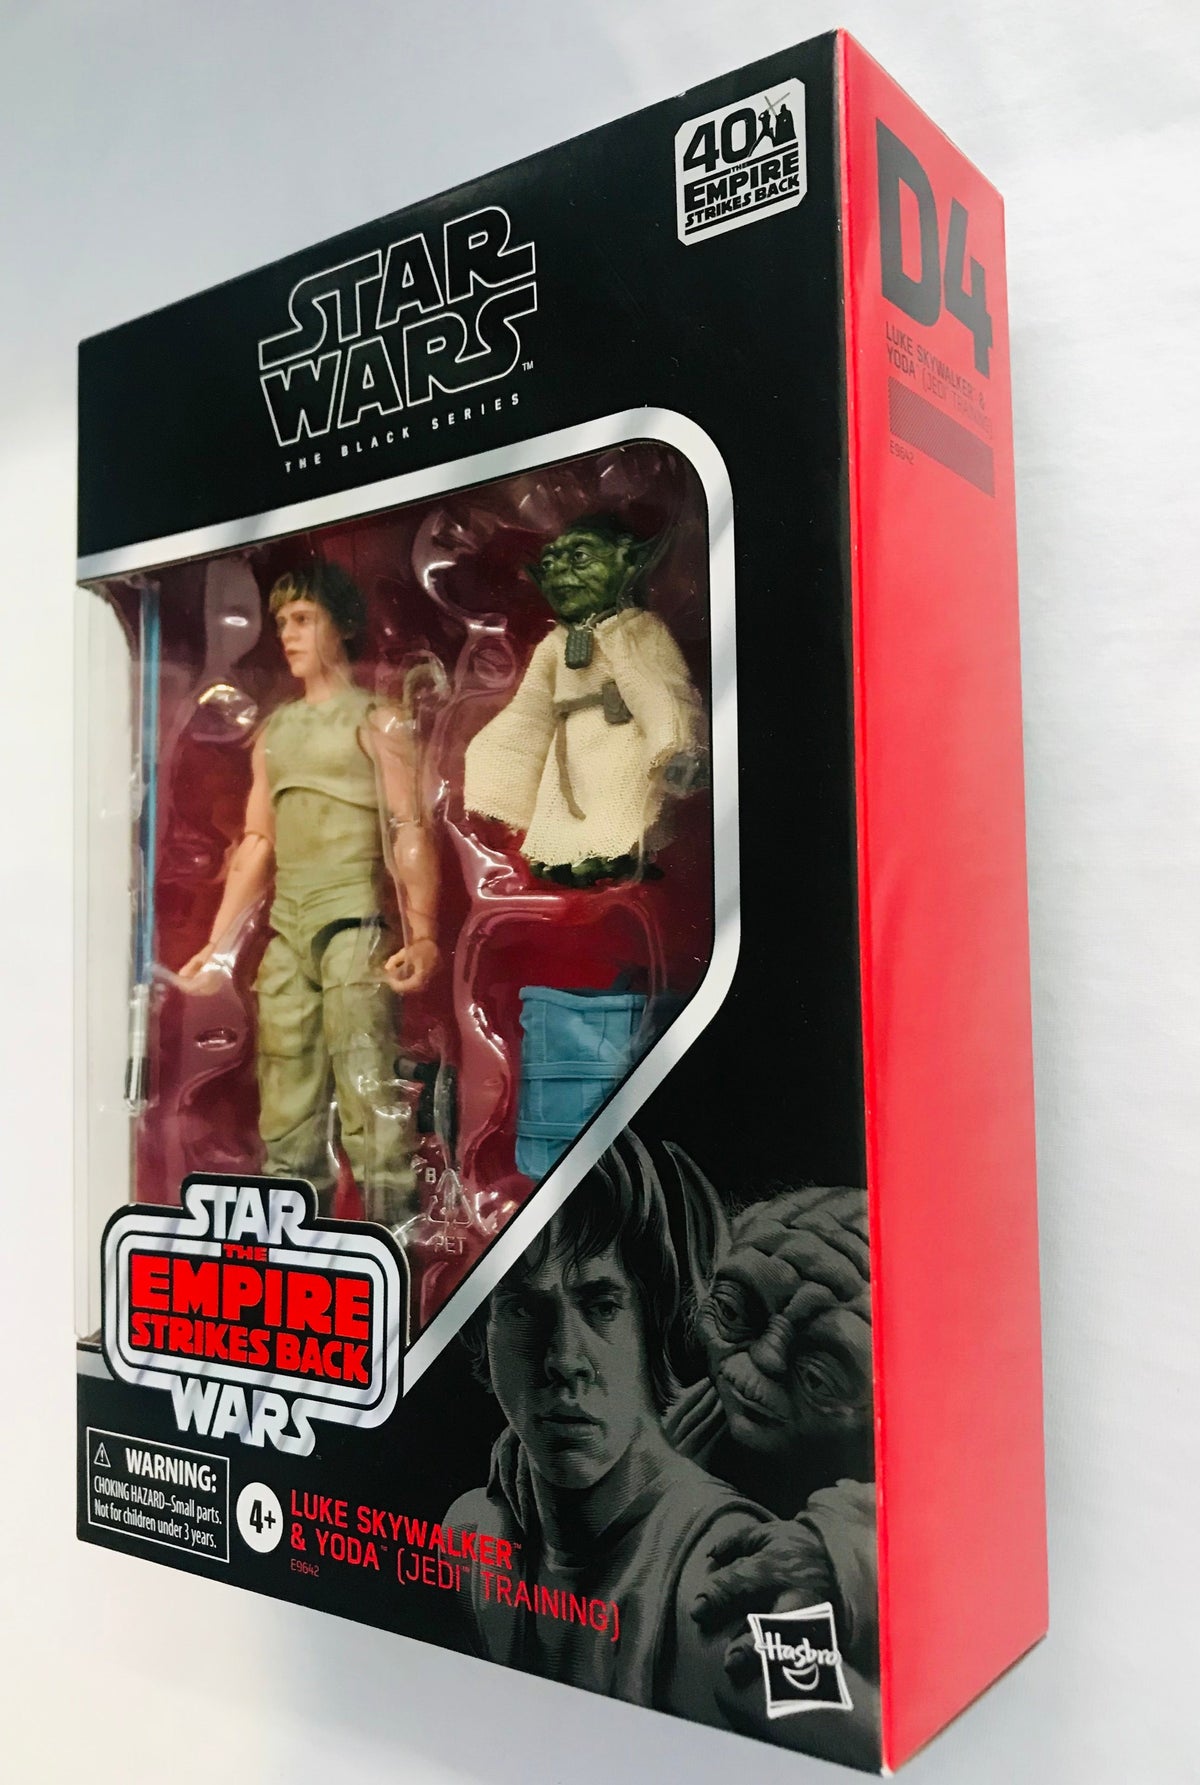 Luke Skywalker & Yoda (Jedi Training) (D4)